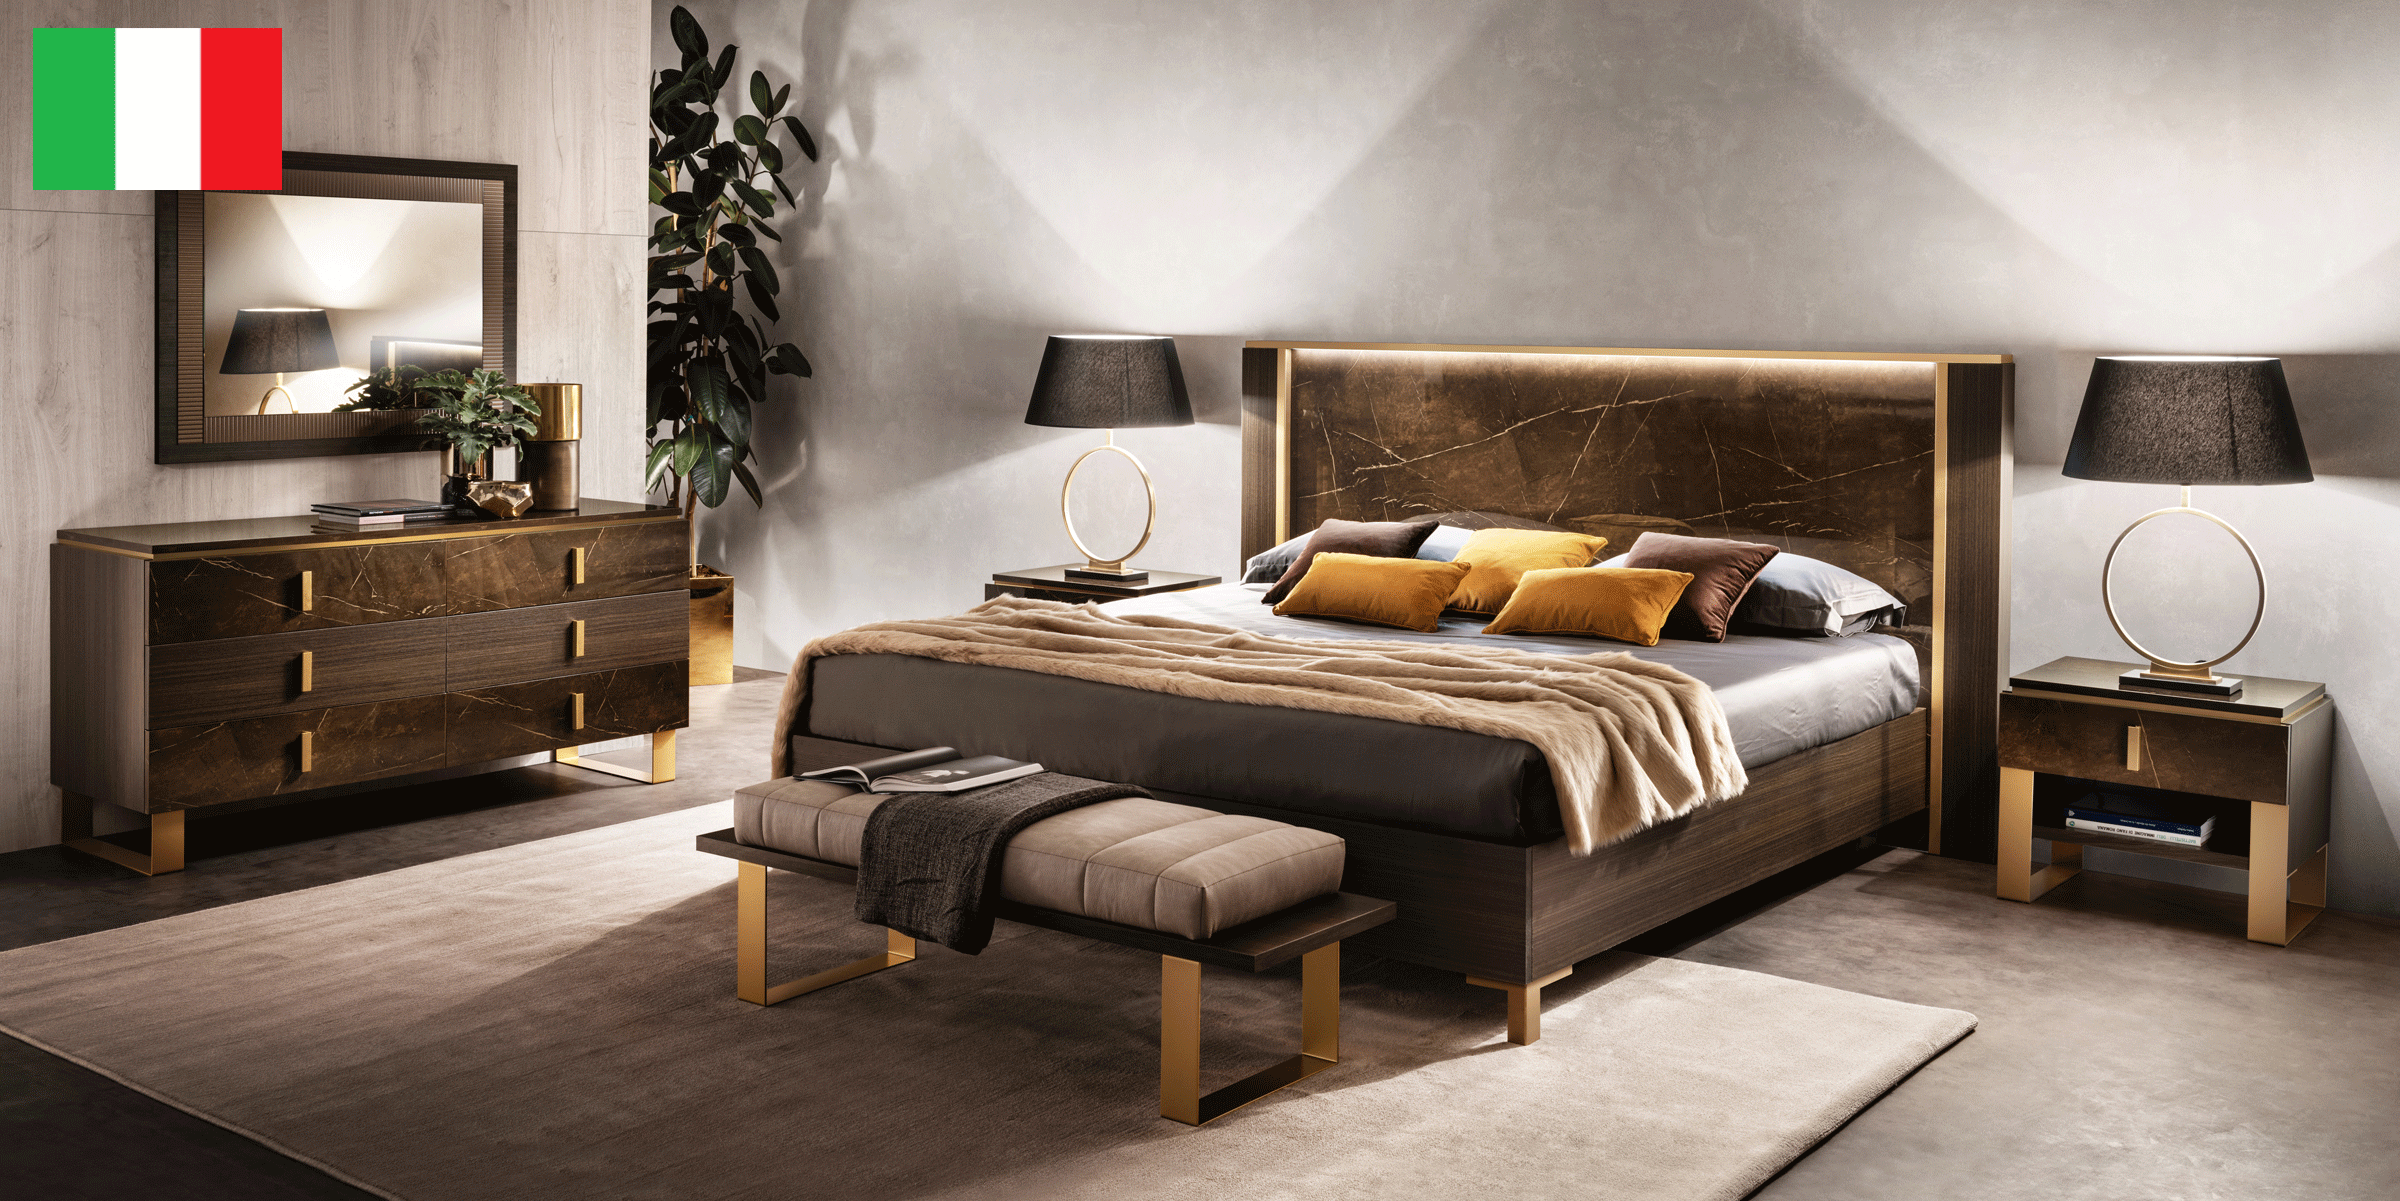 Bedroom Furniture Nightstands Essenza Bedroom by Arredoclassic, Italy